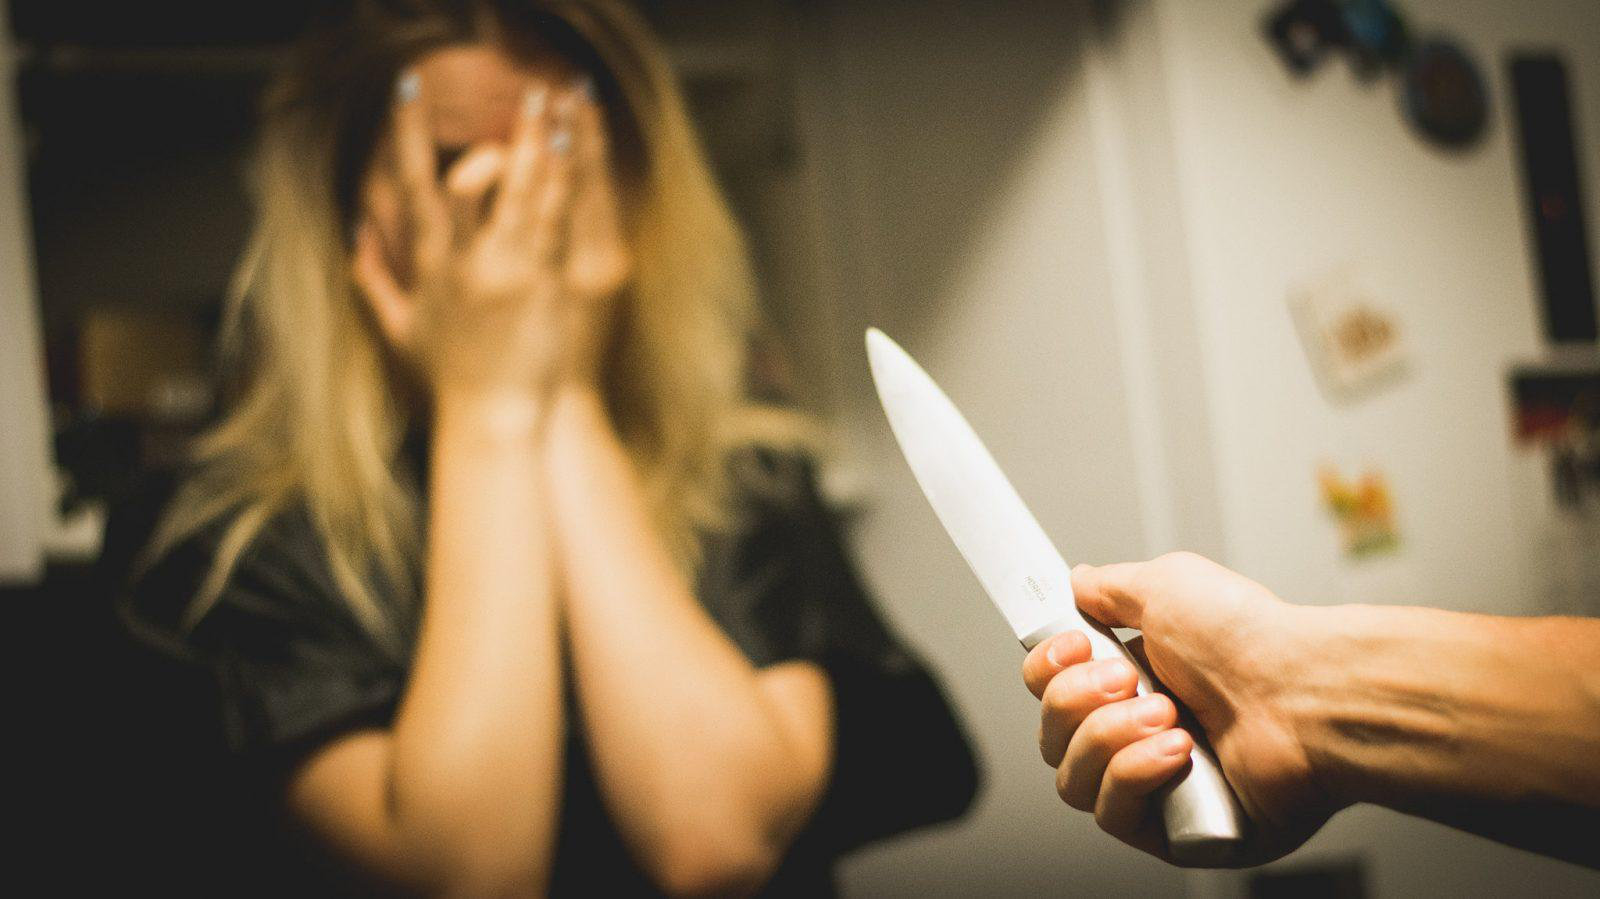 Пьяный муж в ответ на замечание жены схватил нож и угрожал убить ее